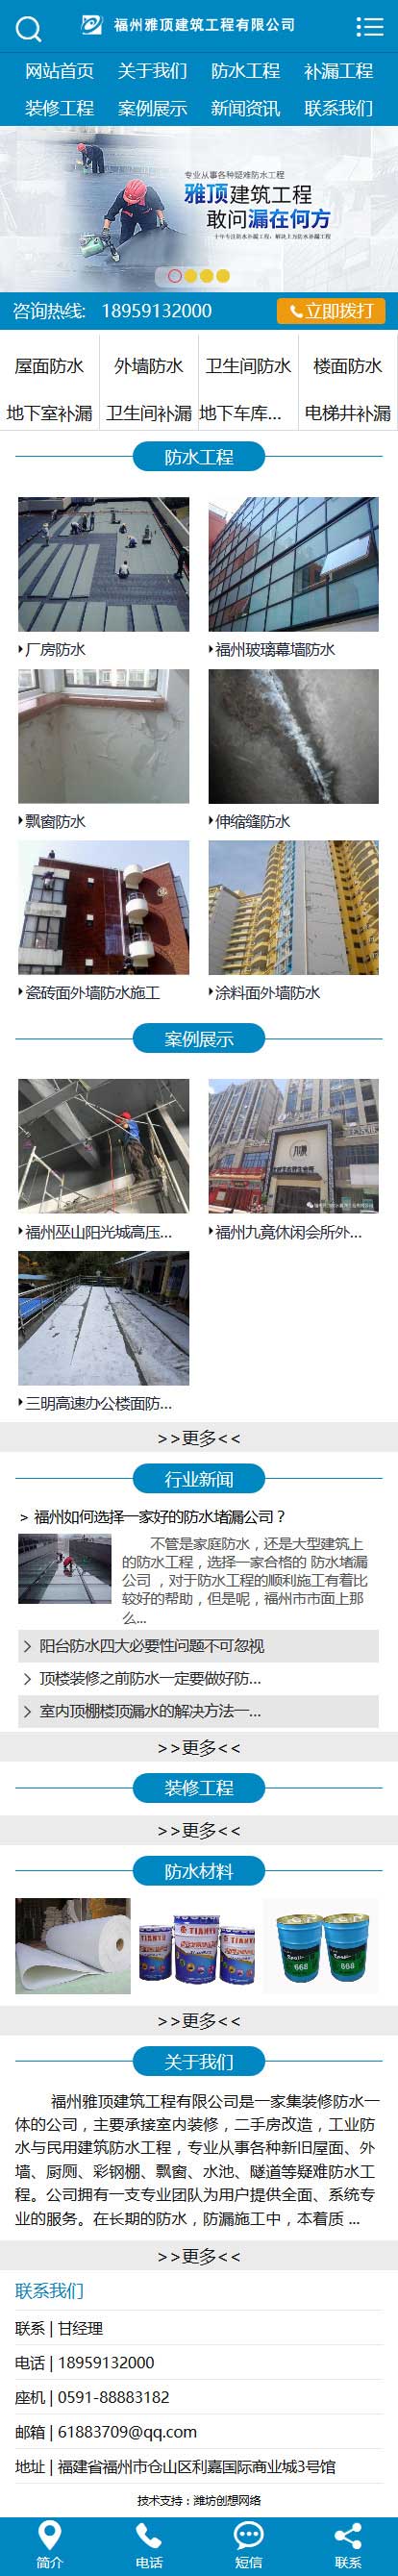 福州雅顶建筑工程网站建设优化案例